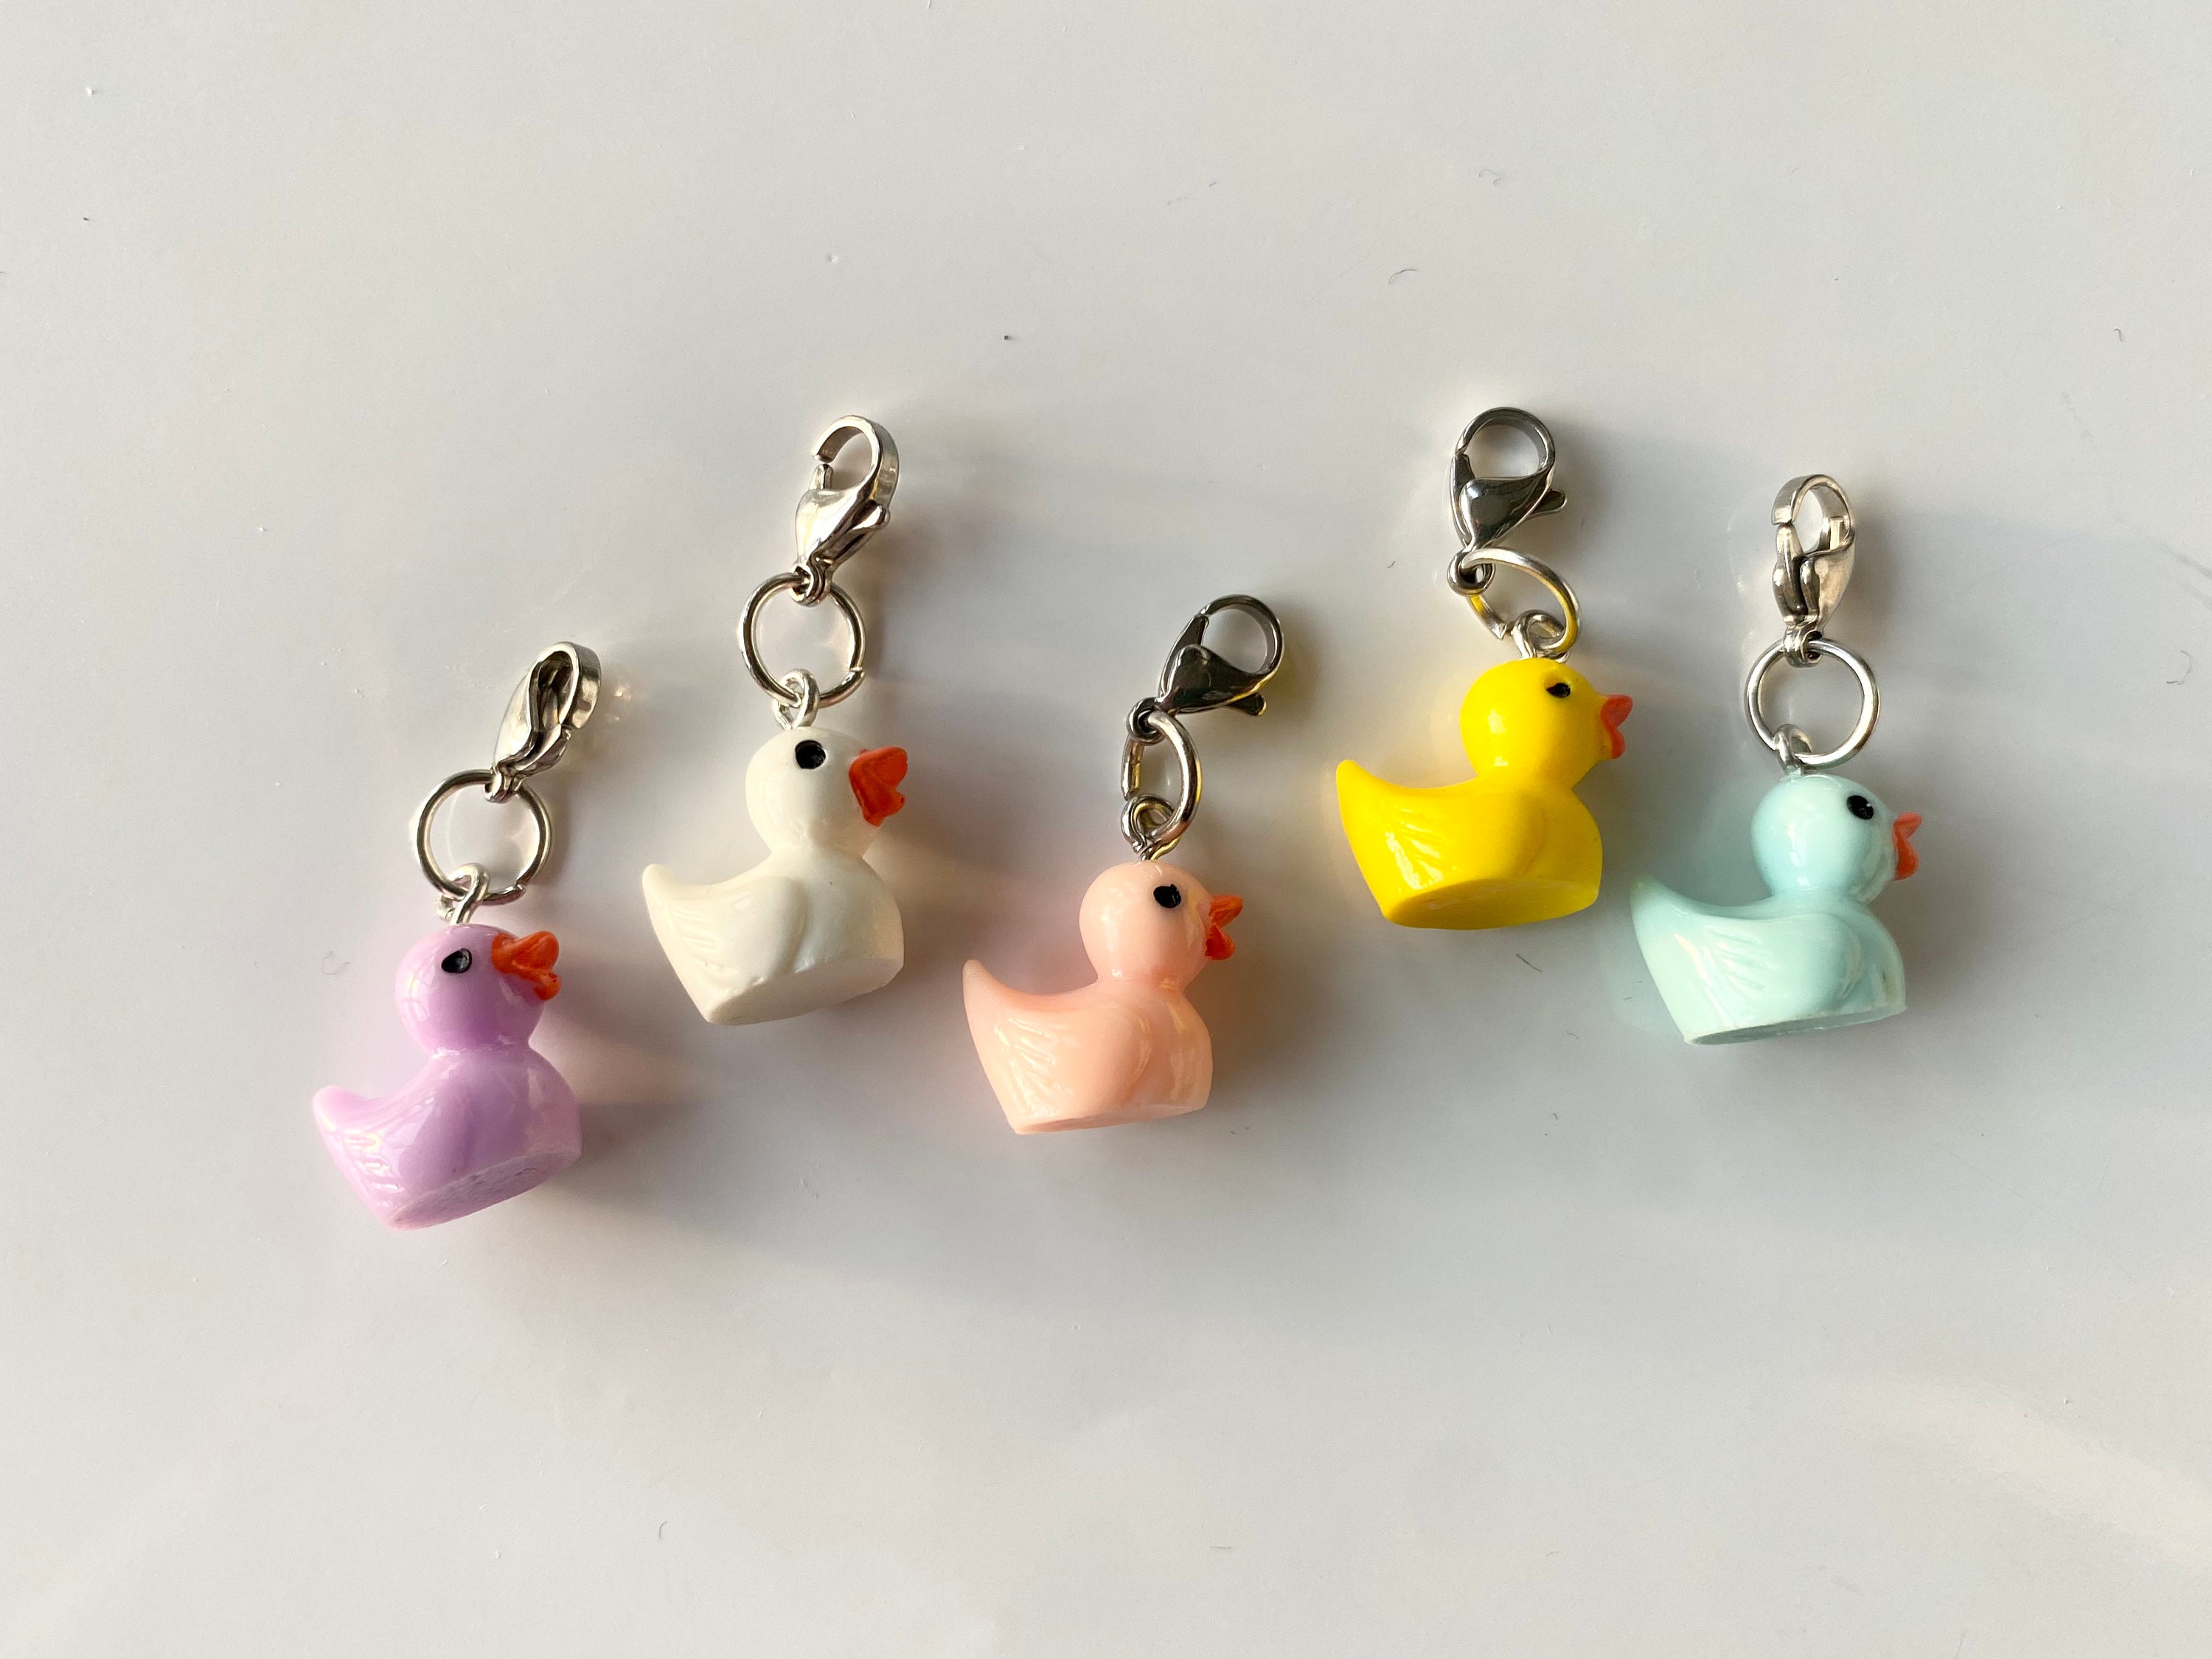 Rubber Duck Party Favor Key Chains Bulk Buy Wholesale Bundle